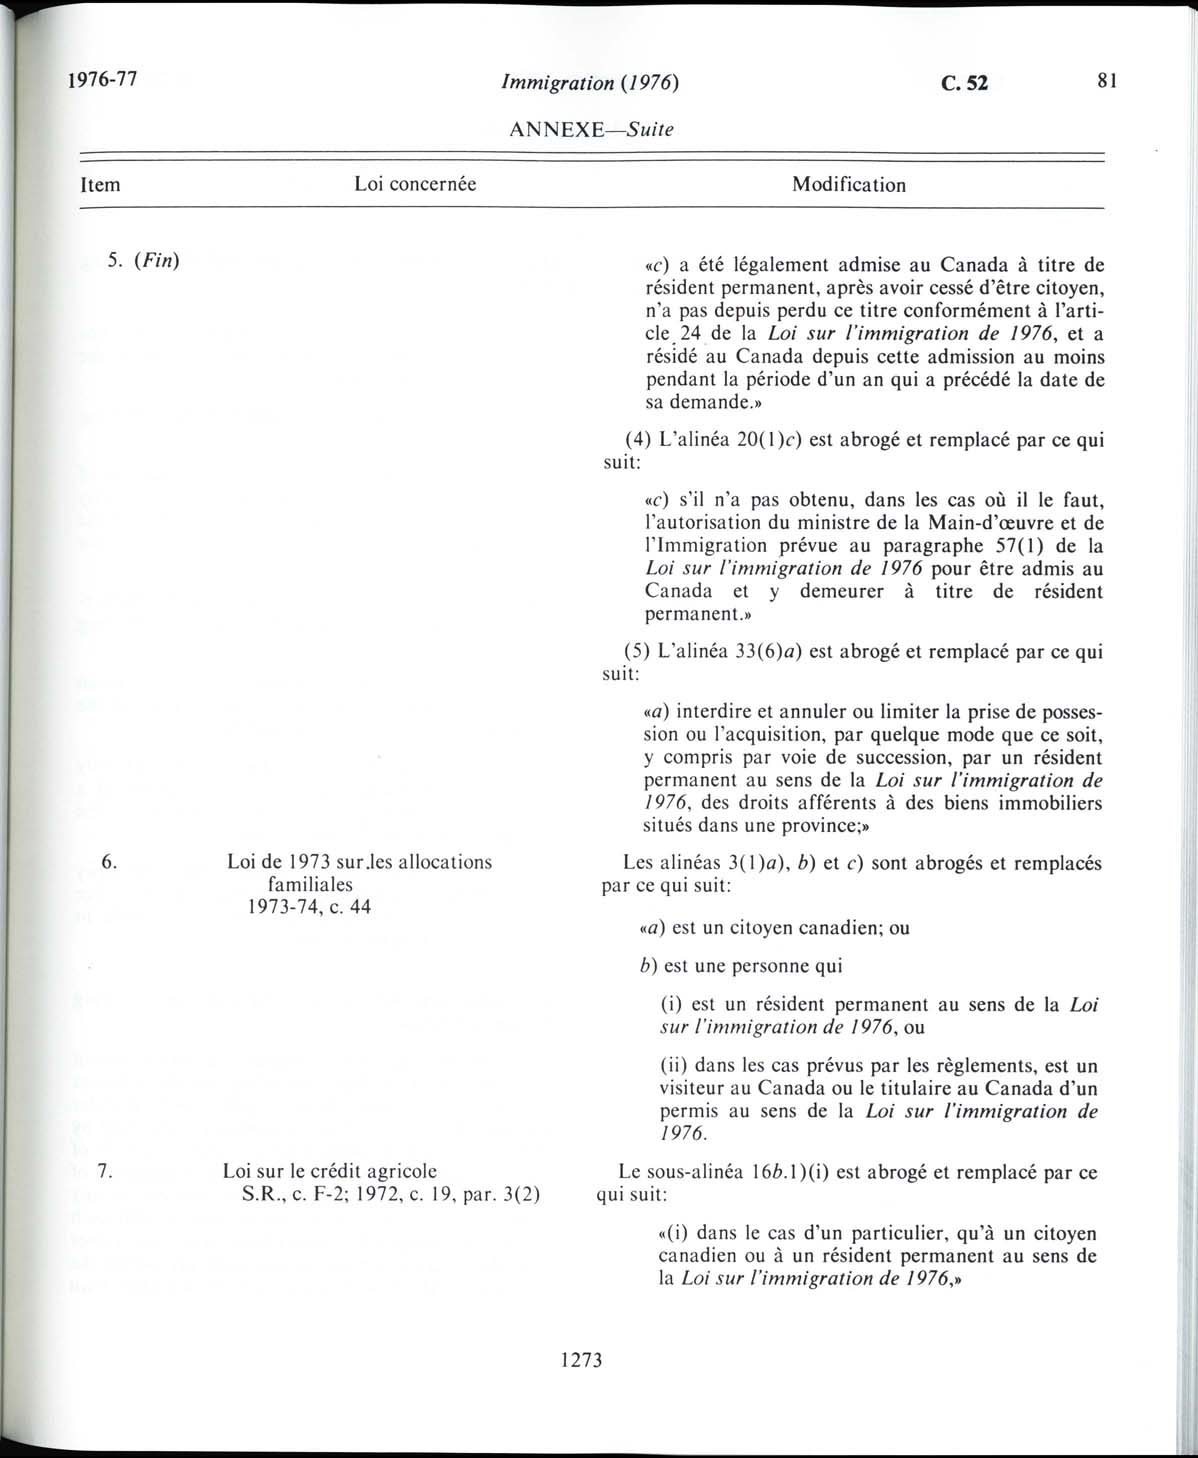 Page 1273 Loi sur l’immigration de 1976